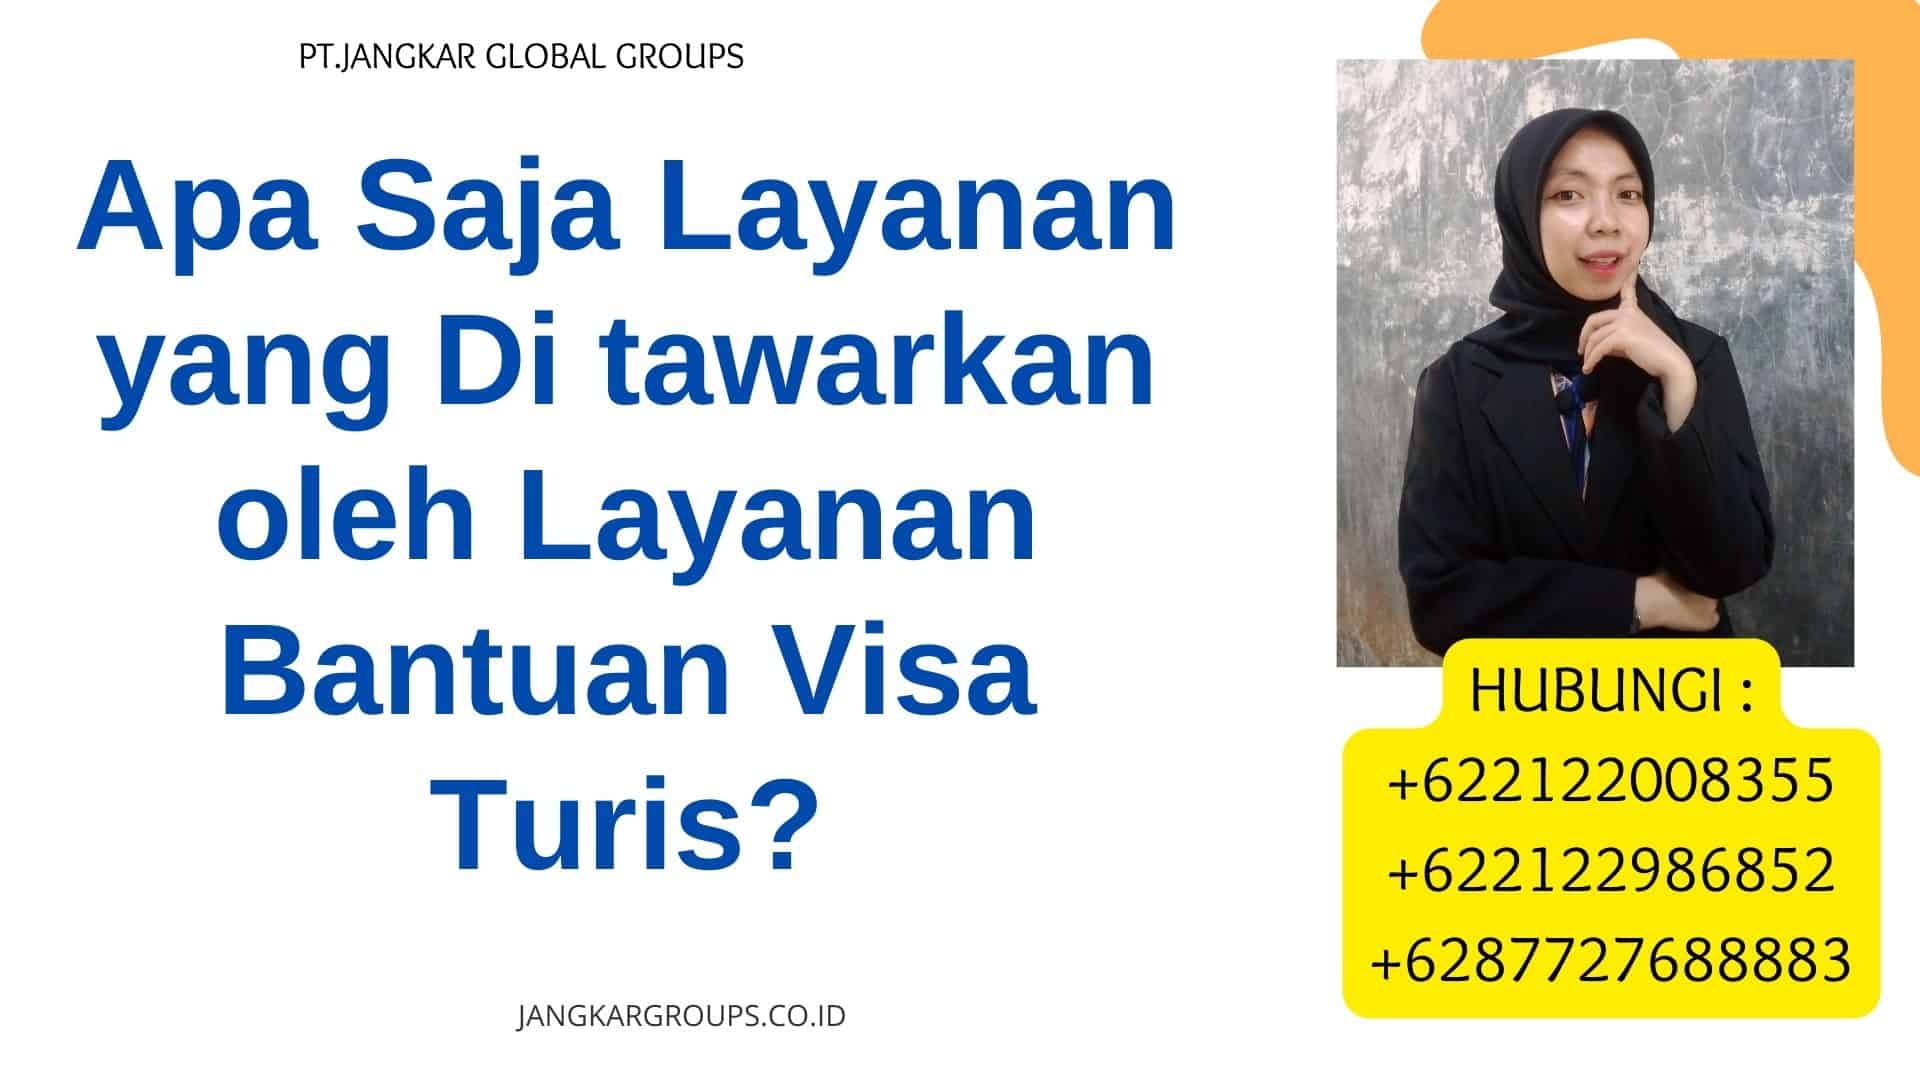 Apa Saja Layanan yang Di tawarkan oleh Layanan Bantuan Visa Turis